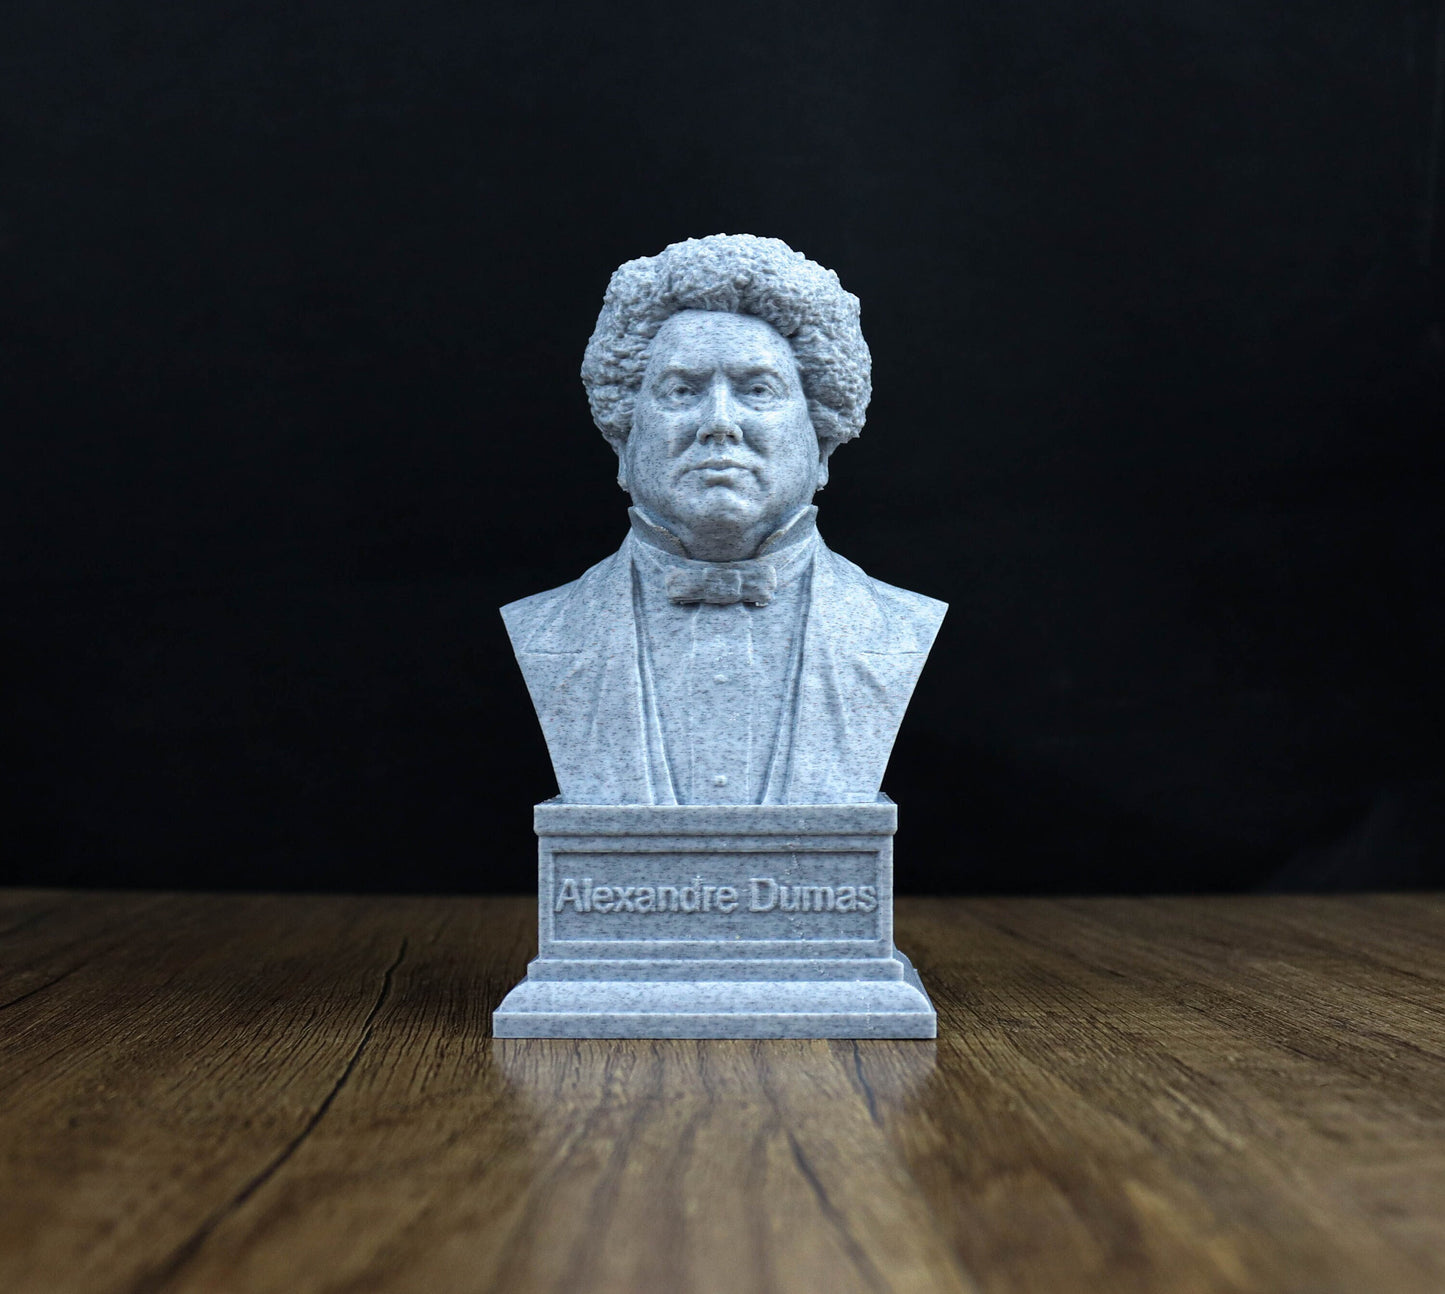 Alexander Dumas bust, French writer sculpture